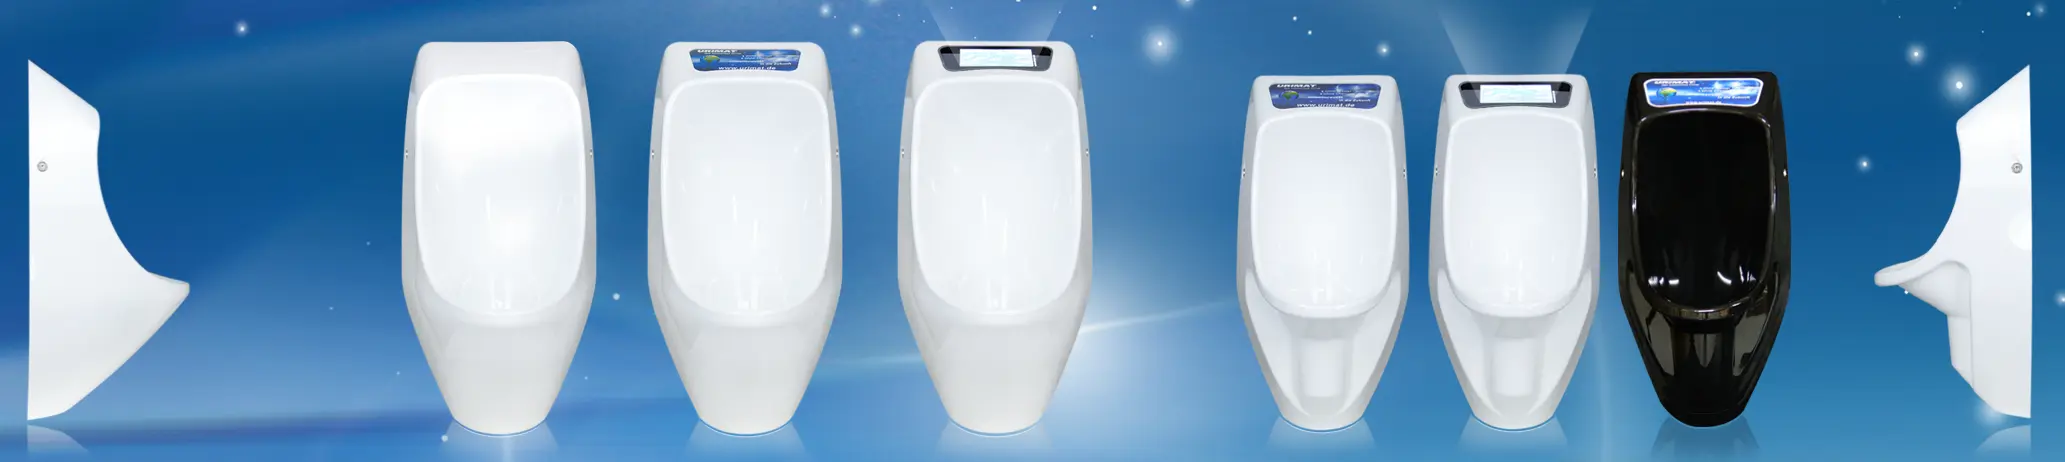 Verschiedene Arten von wasserlosen Urinalen